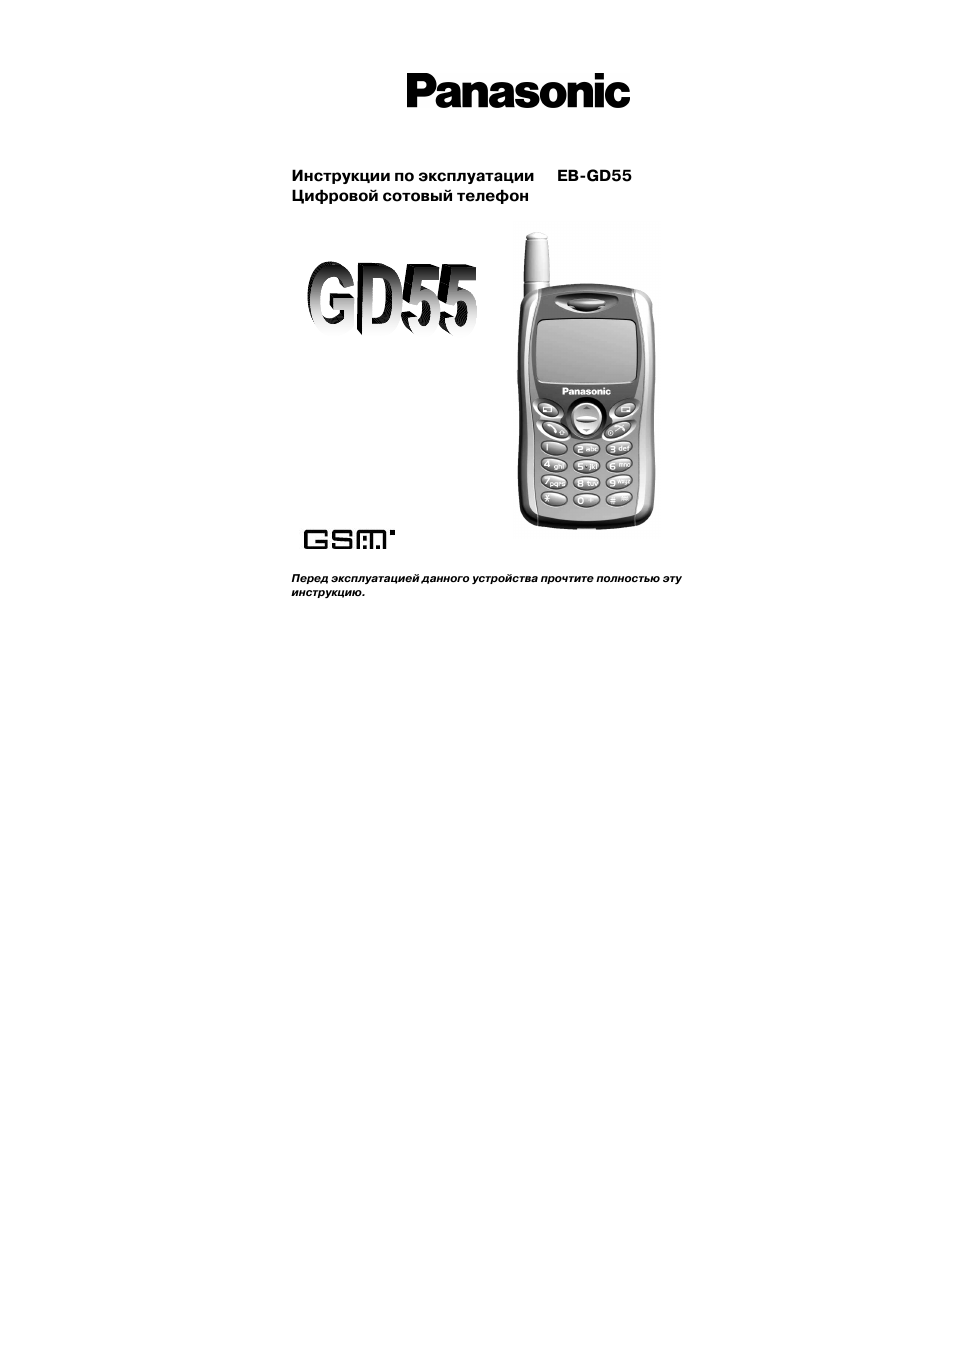 Инструкция по эксплуатации Panasonic EB-GD55 | 40 страниц